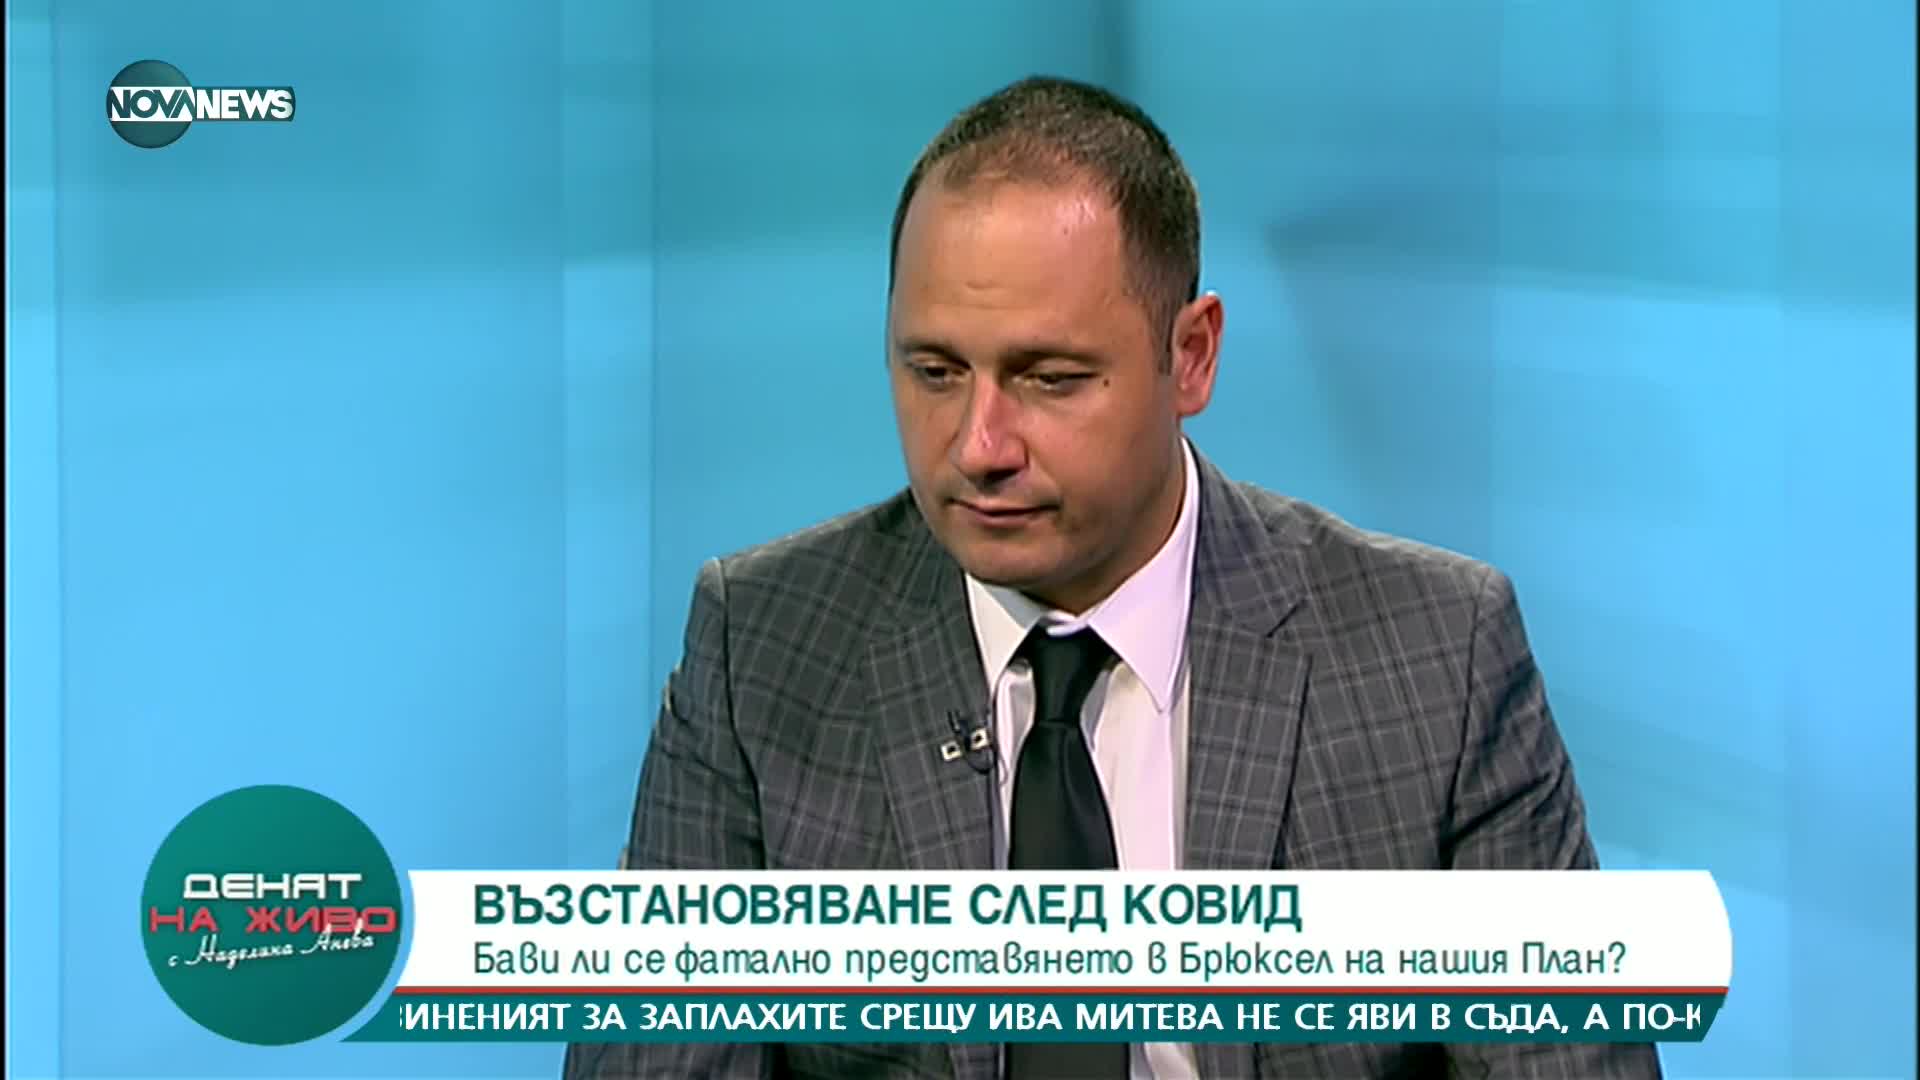 Петър Витанов: Министрите Петков и Василев ще направят партия и ще ангажират десни избиратели